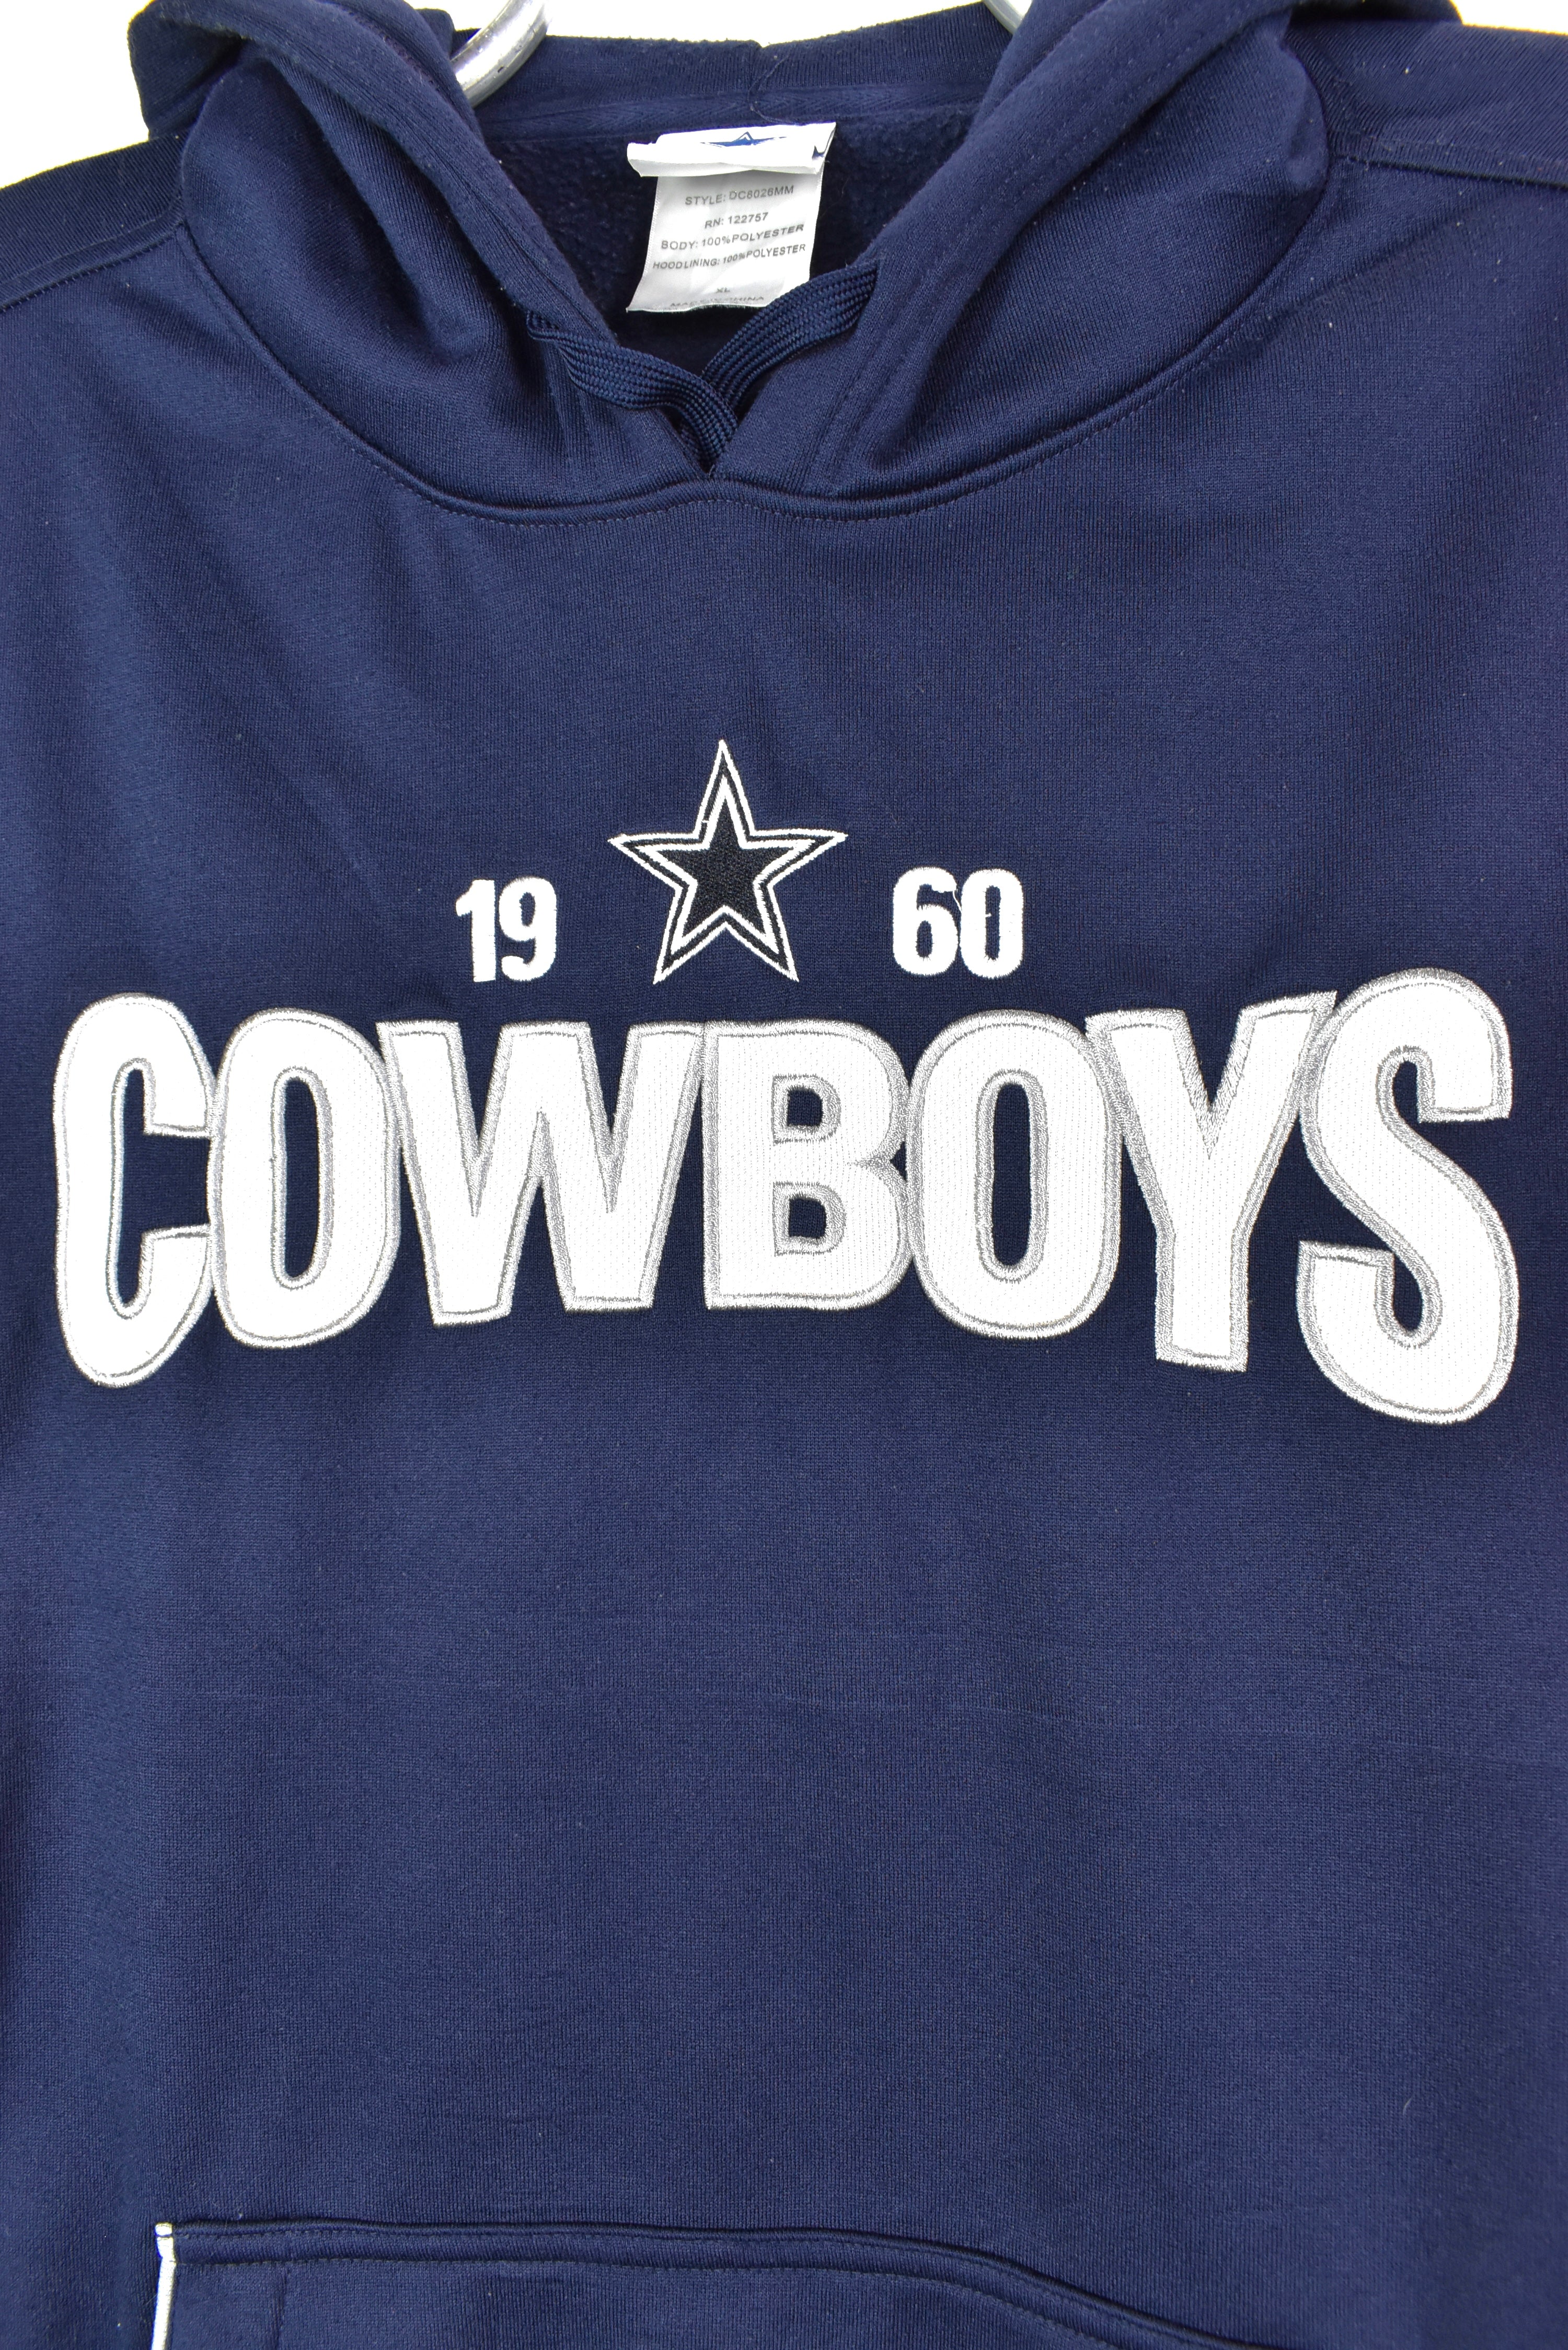 Dallas Cowboys Sweatshirts, Dallas Cowboys Sweatshirts